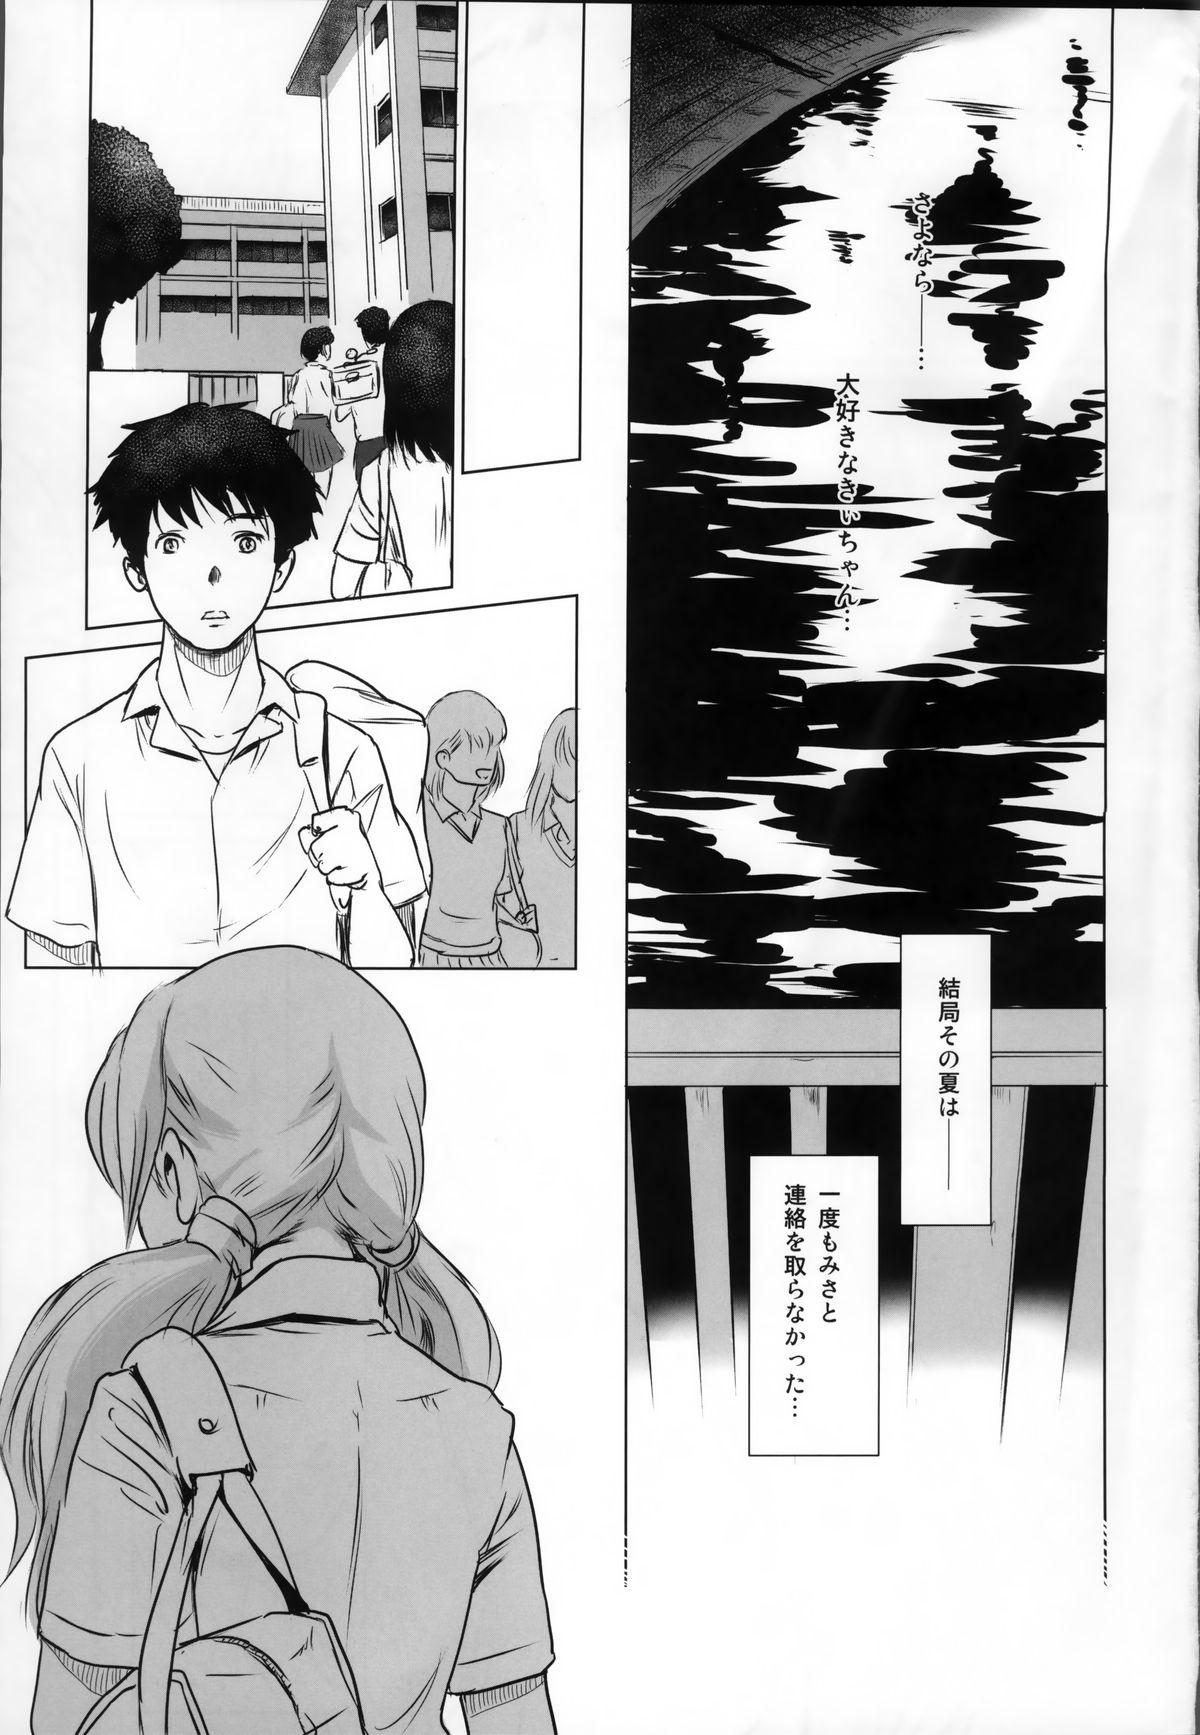 Story of the 'N' Situation - Situation#2 Kokoro Utsuri 34